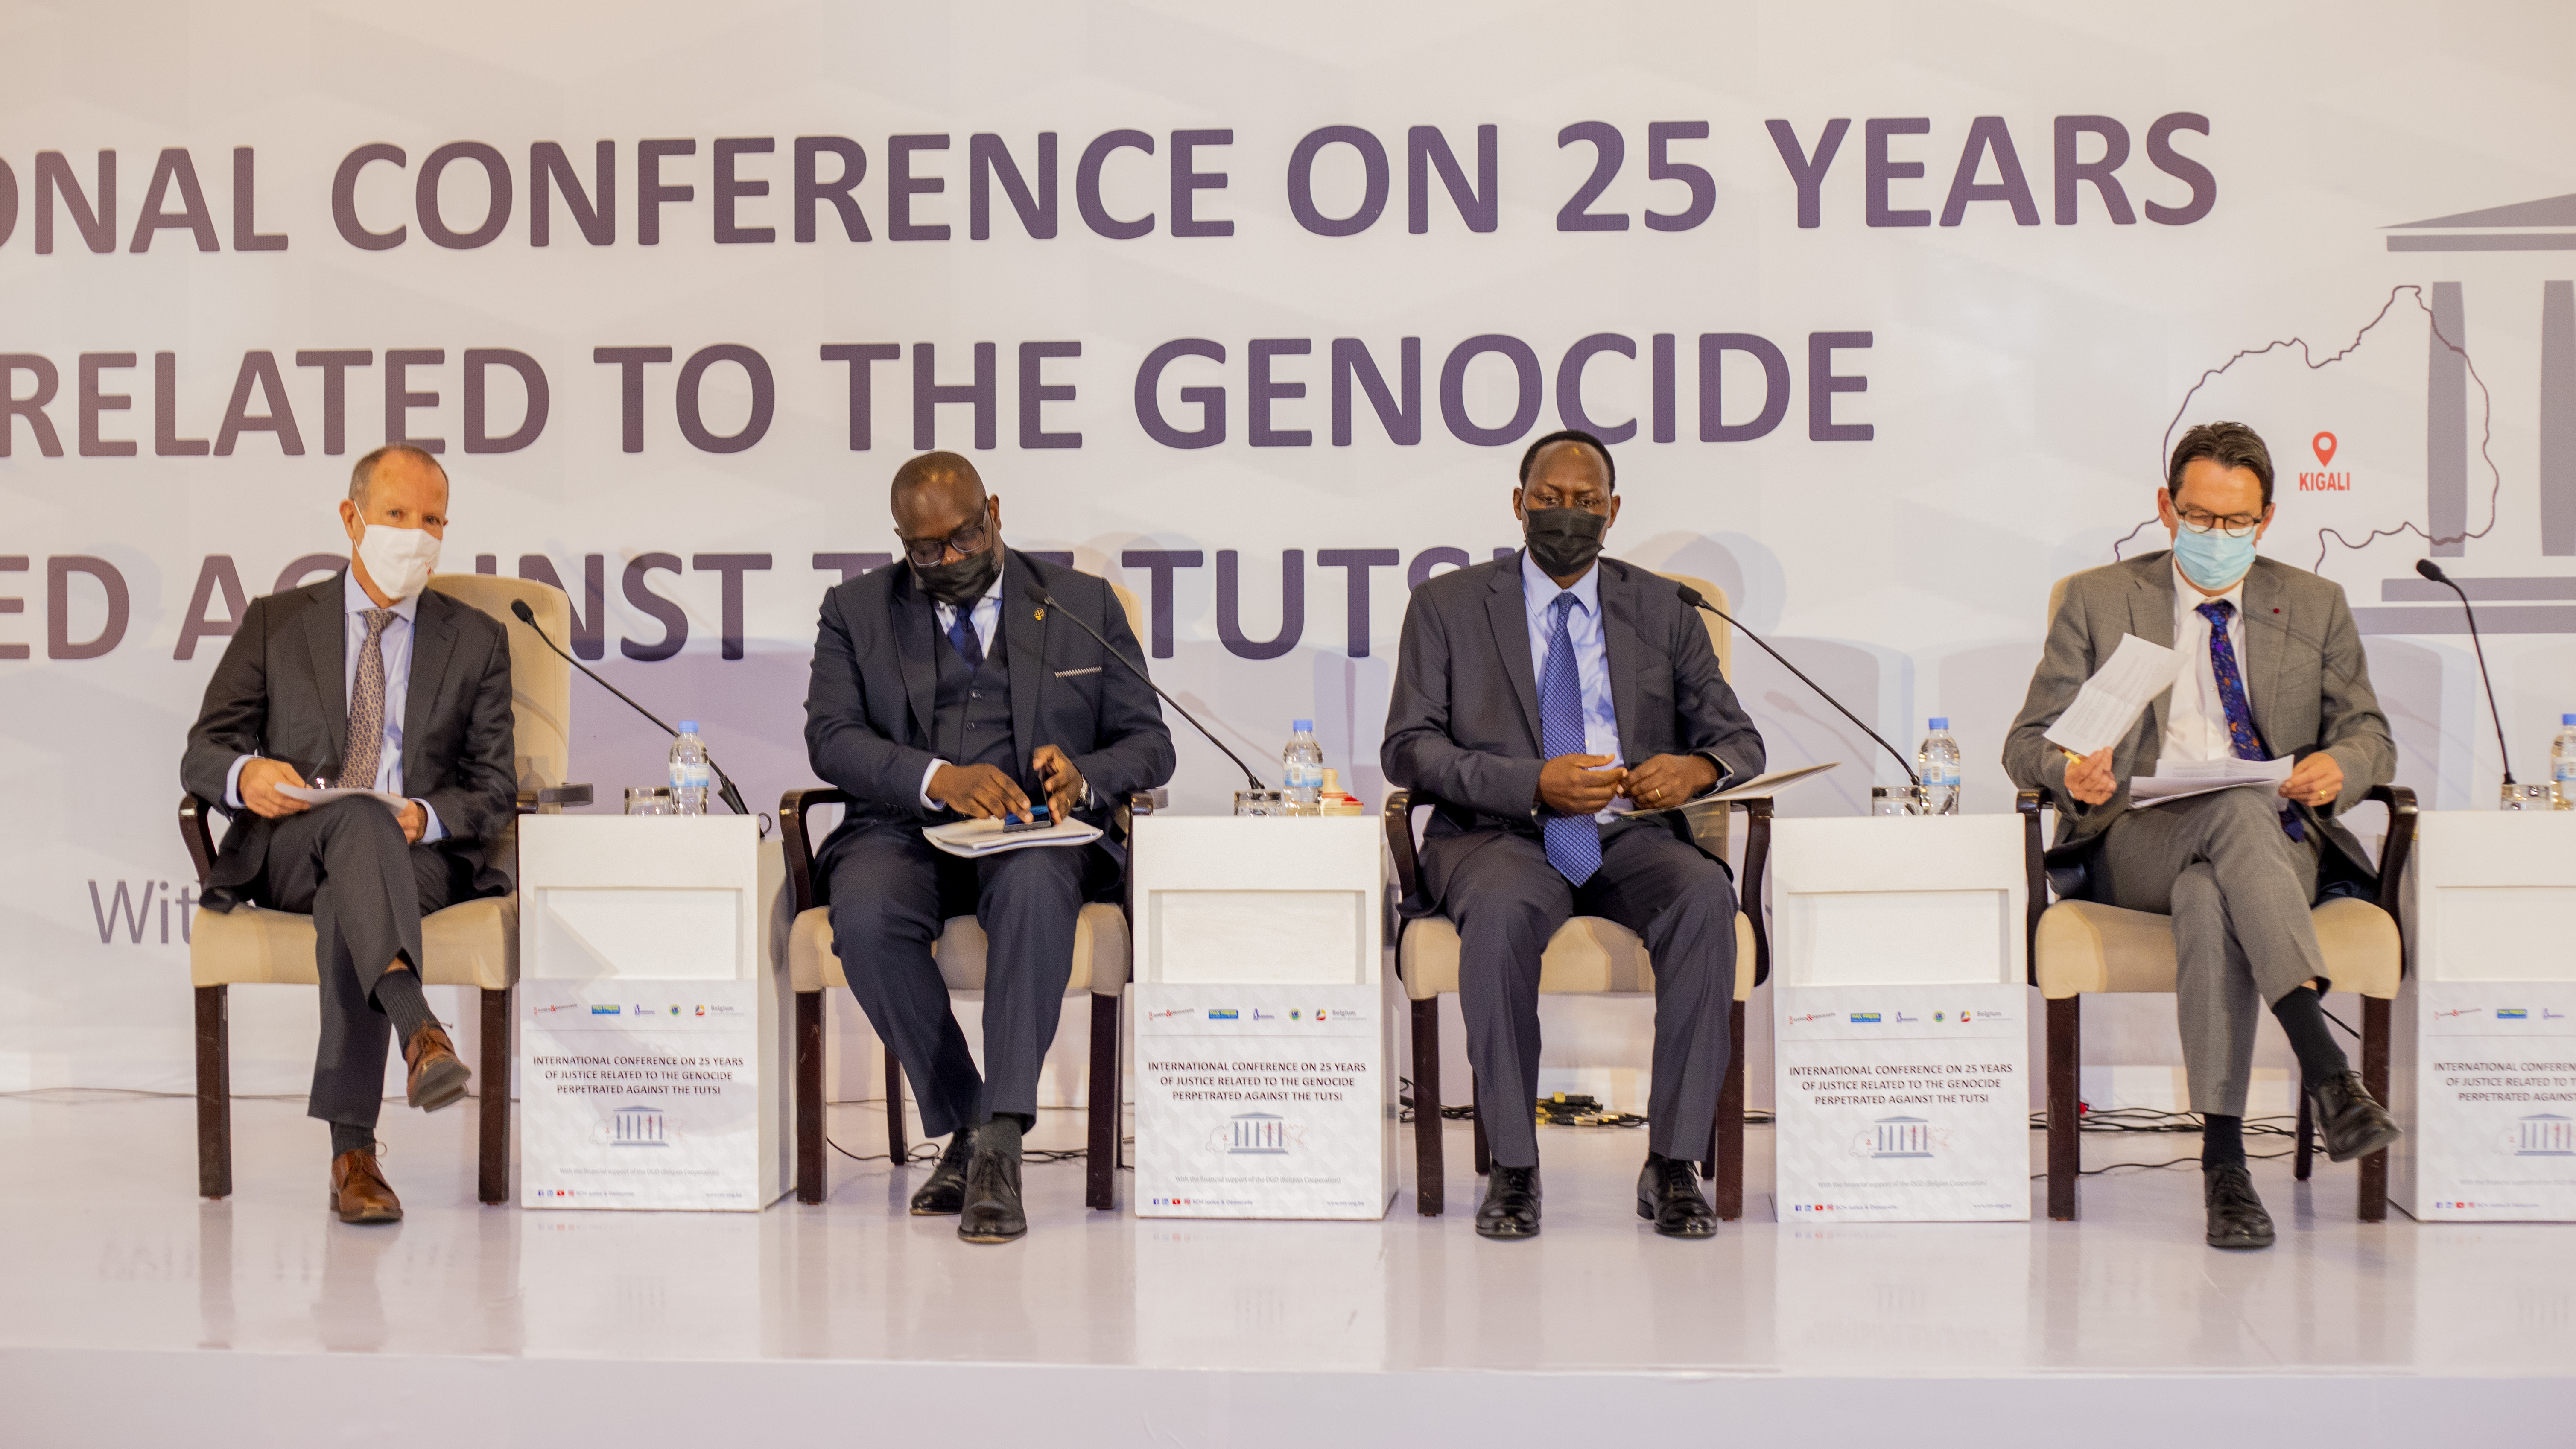 Conférence internationale sur la justice liée au génocide perpétré contre les Tutsi, 25 ans après